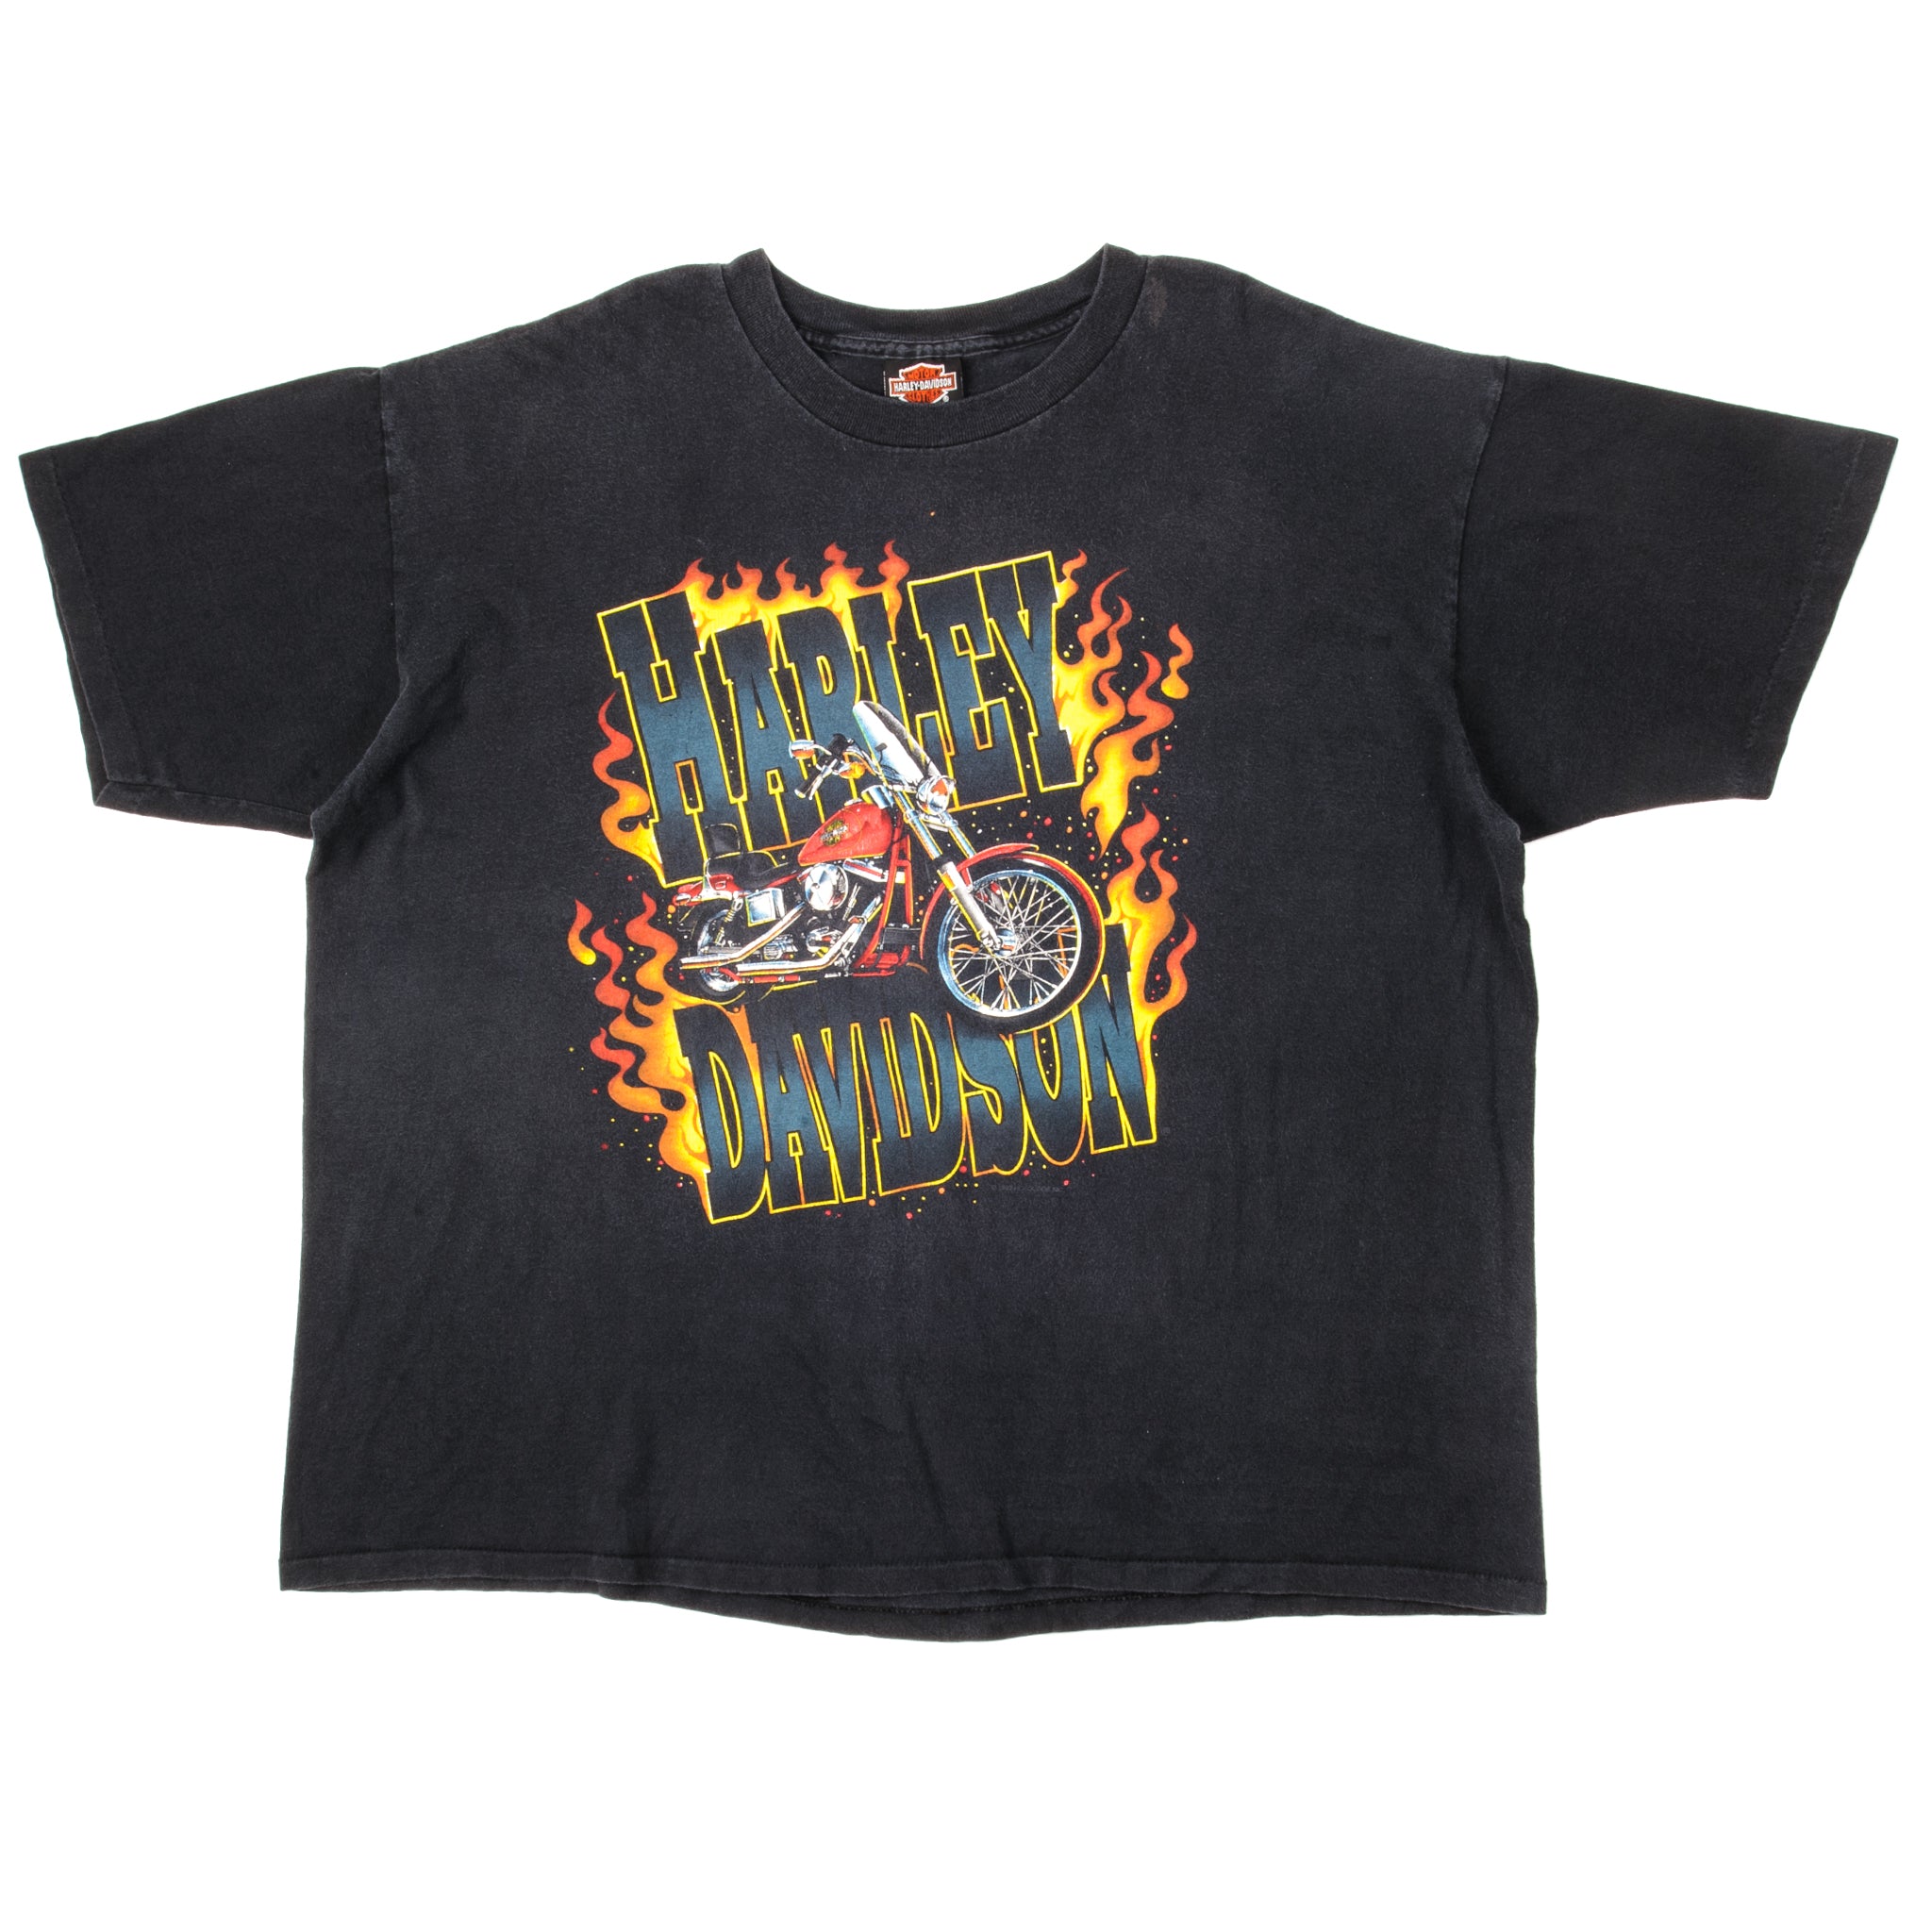 RARE Vintage 90's 1992 Easyriders Motorcycle Biker T Shirt Black